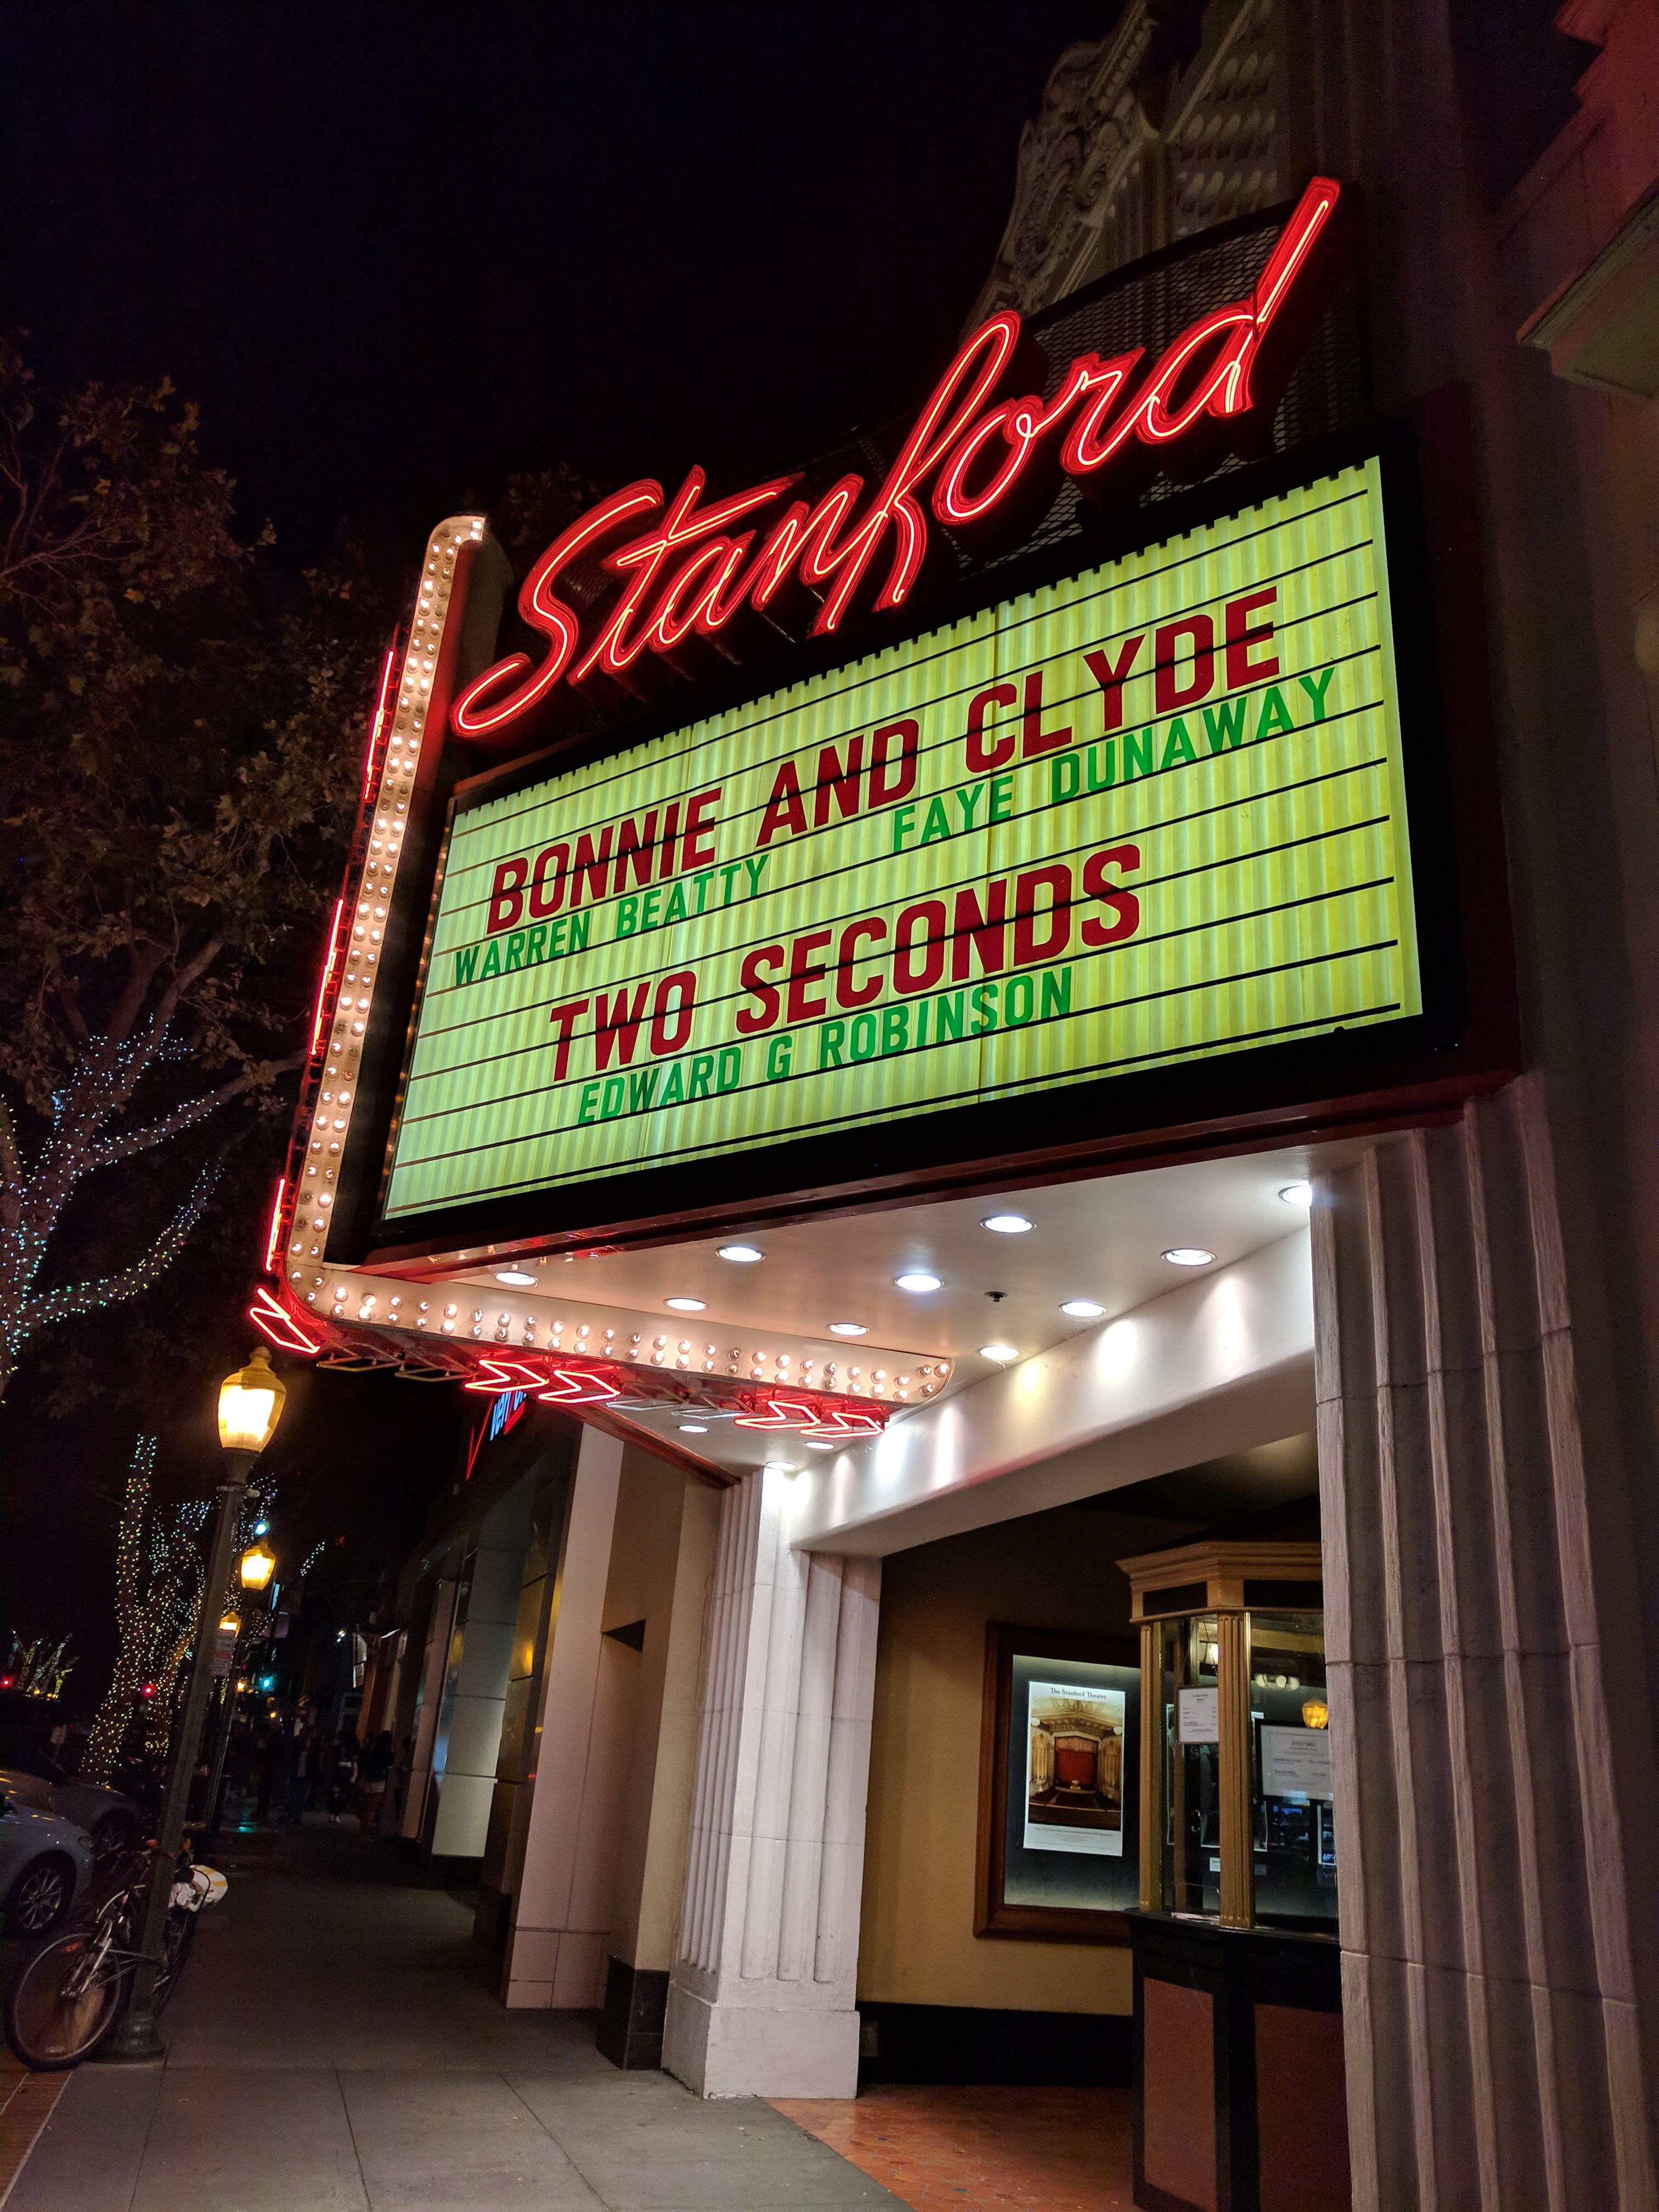 De entree van het Stanford Theatre in Palo Alto